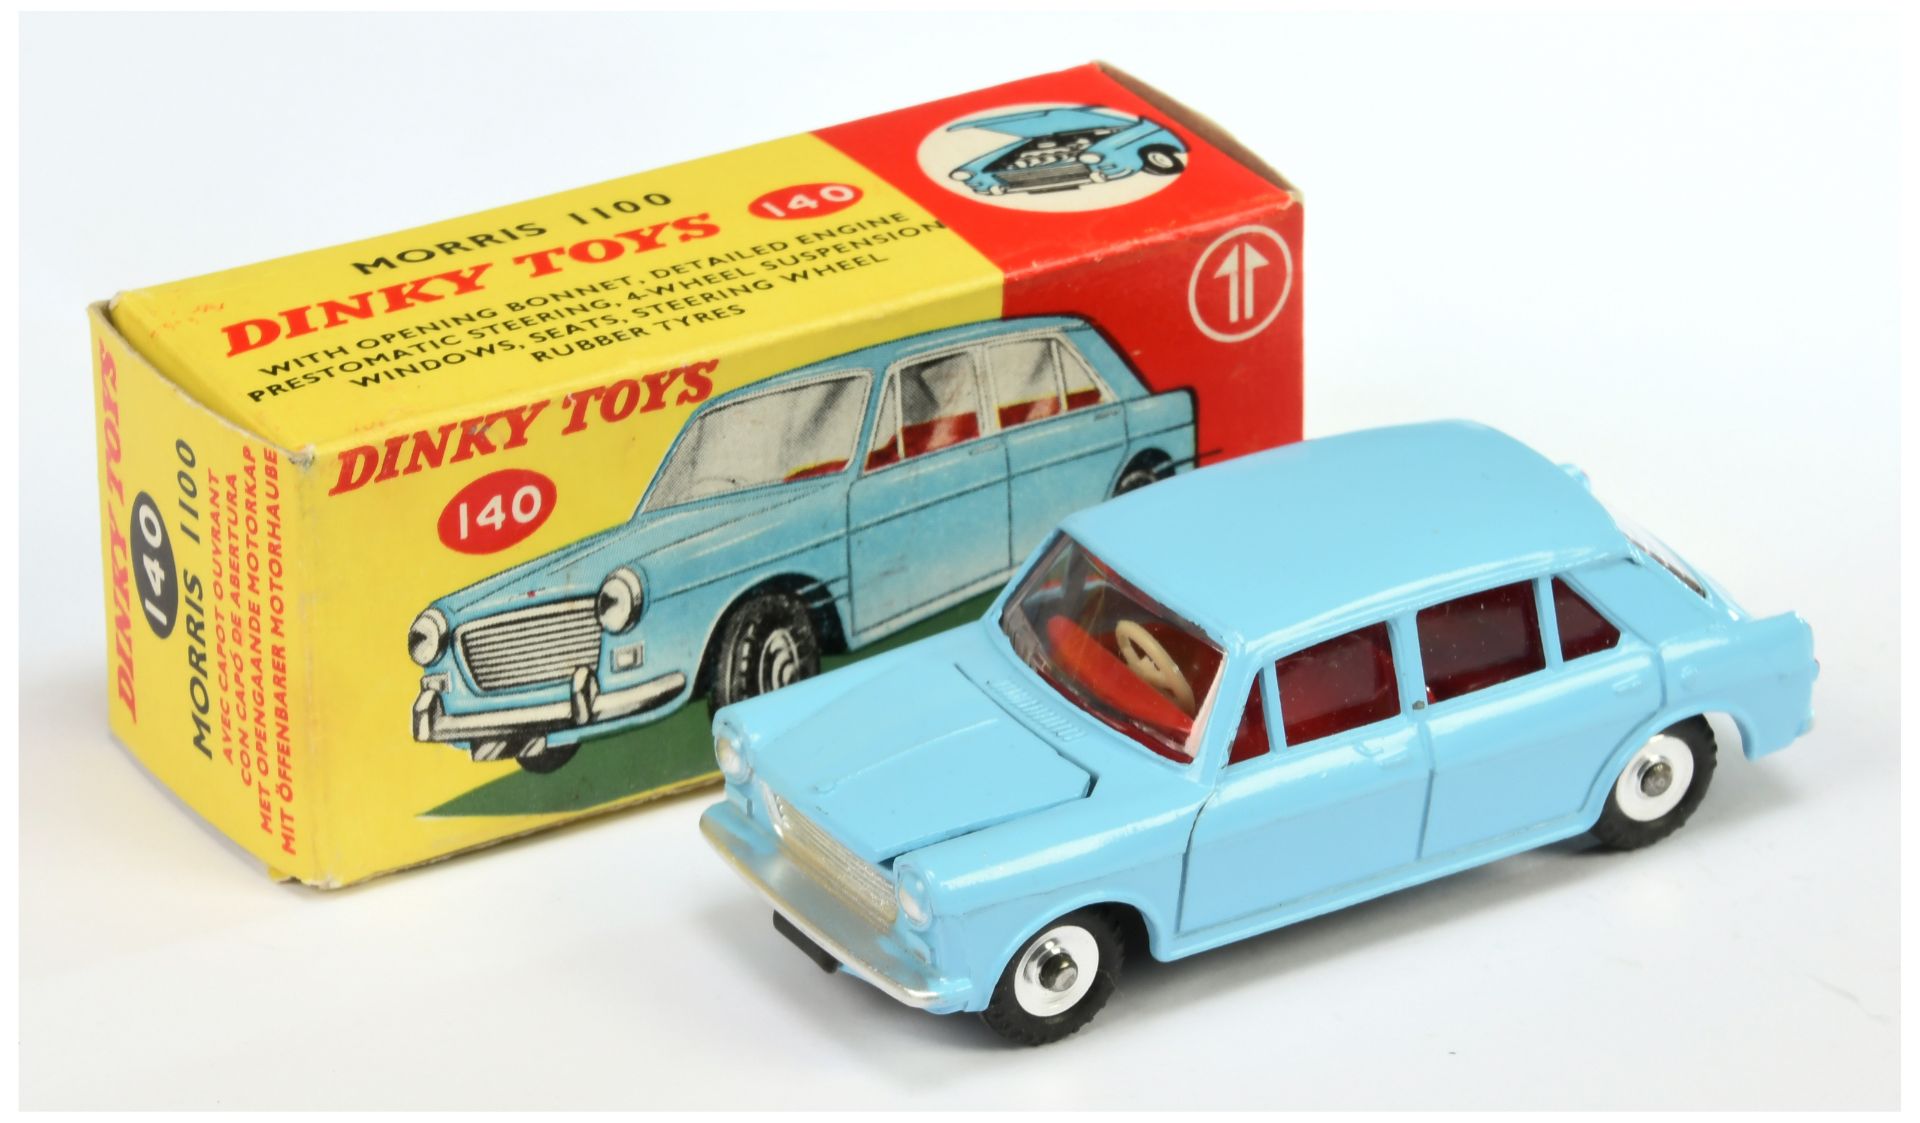 Dinky Toys 140 Morris 1100 - Light blue body, red interior, silver trim, chrome spun hubs 